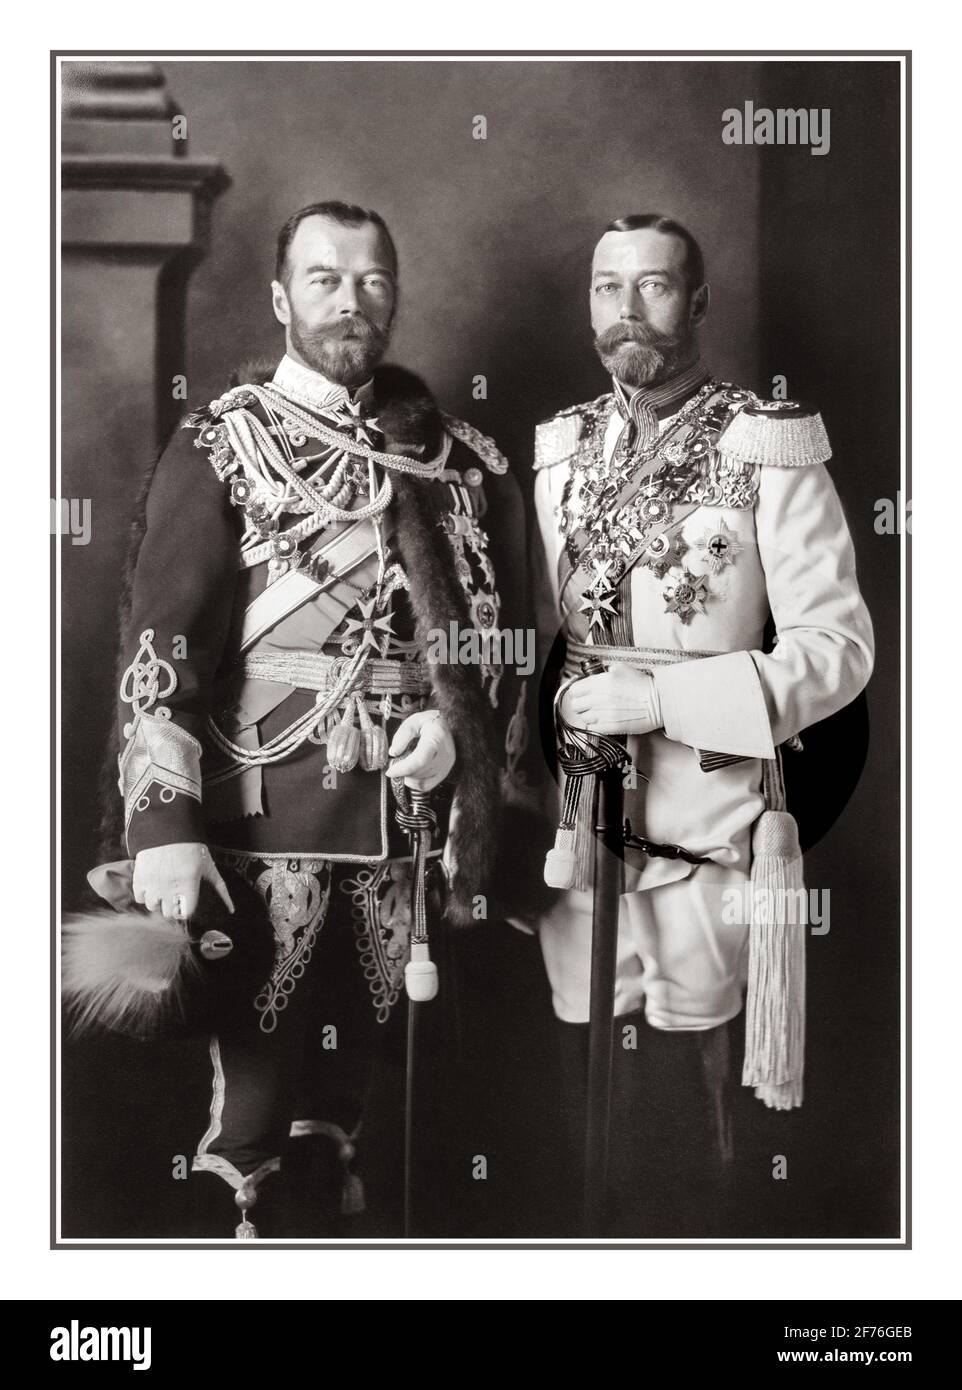 I cugini RUSSI e BRITANNICI del 1900 Nicolas II ROMANOV (uniforme scura), ultimo zar russo e Giorgio V (uniforme chiara), primo re britannico della dinastia Windsor, Berlino, 1913. Foto Stock